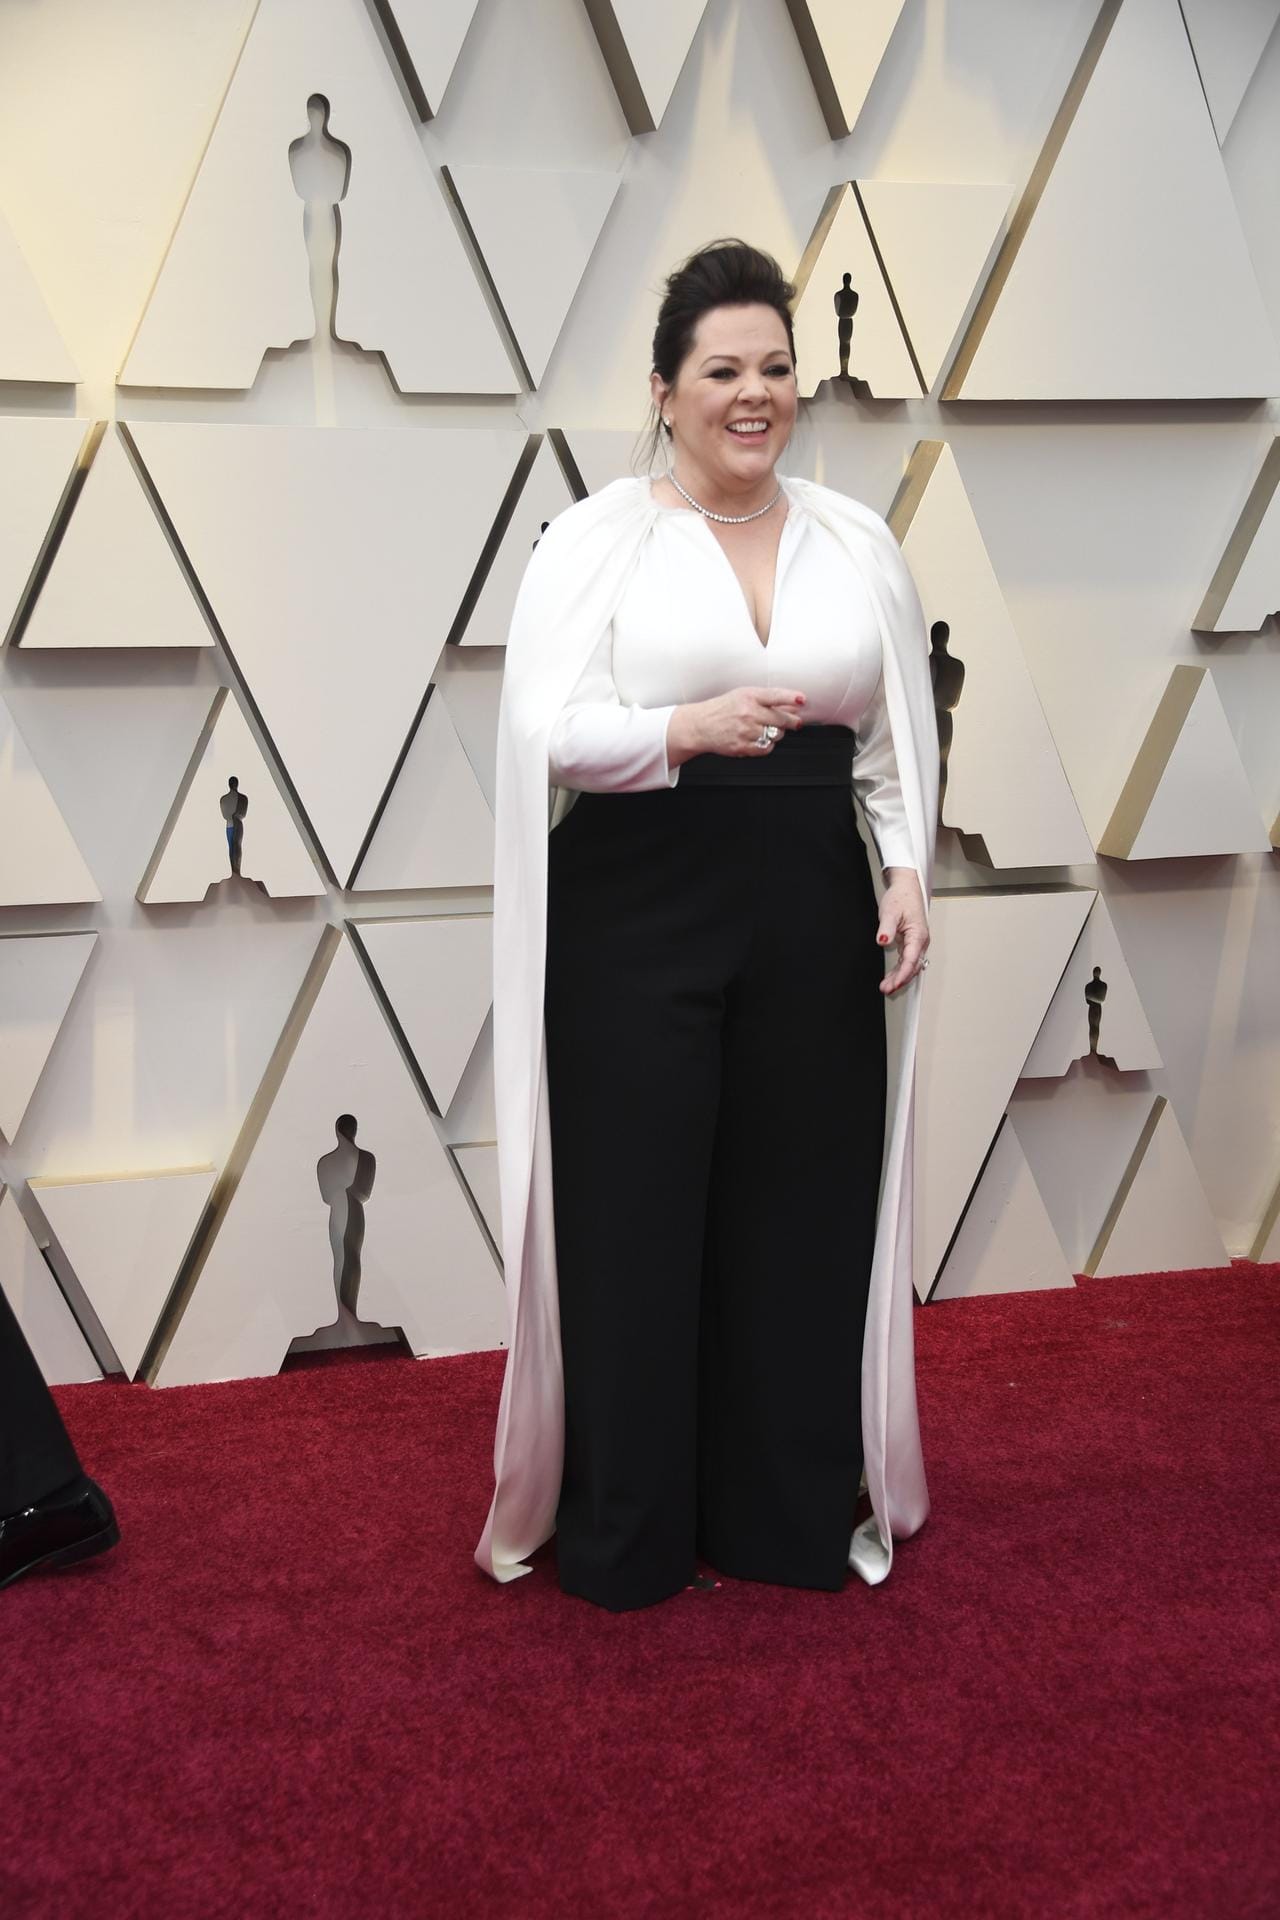 Melissa McCarthy: Sie ist nominiert und präsentiert auf dem Red Carpet einen Schwarz-Weiß-Look.